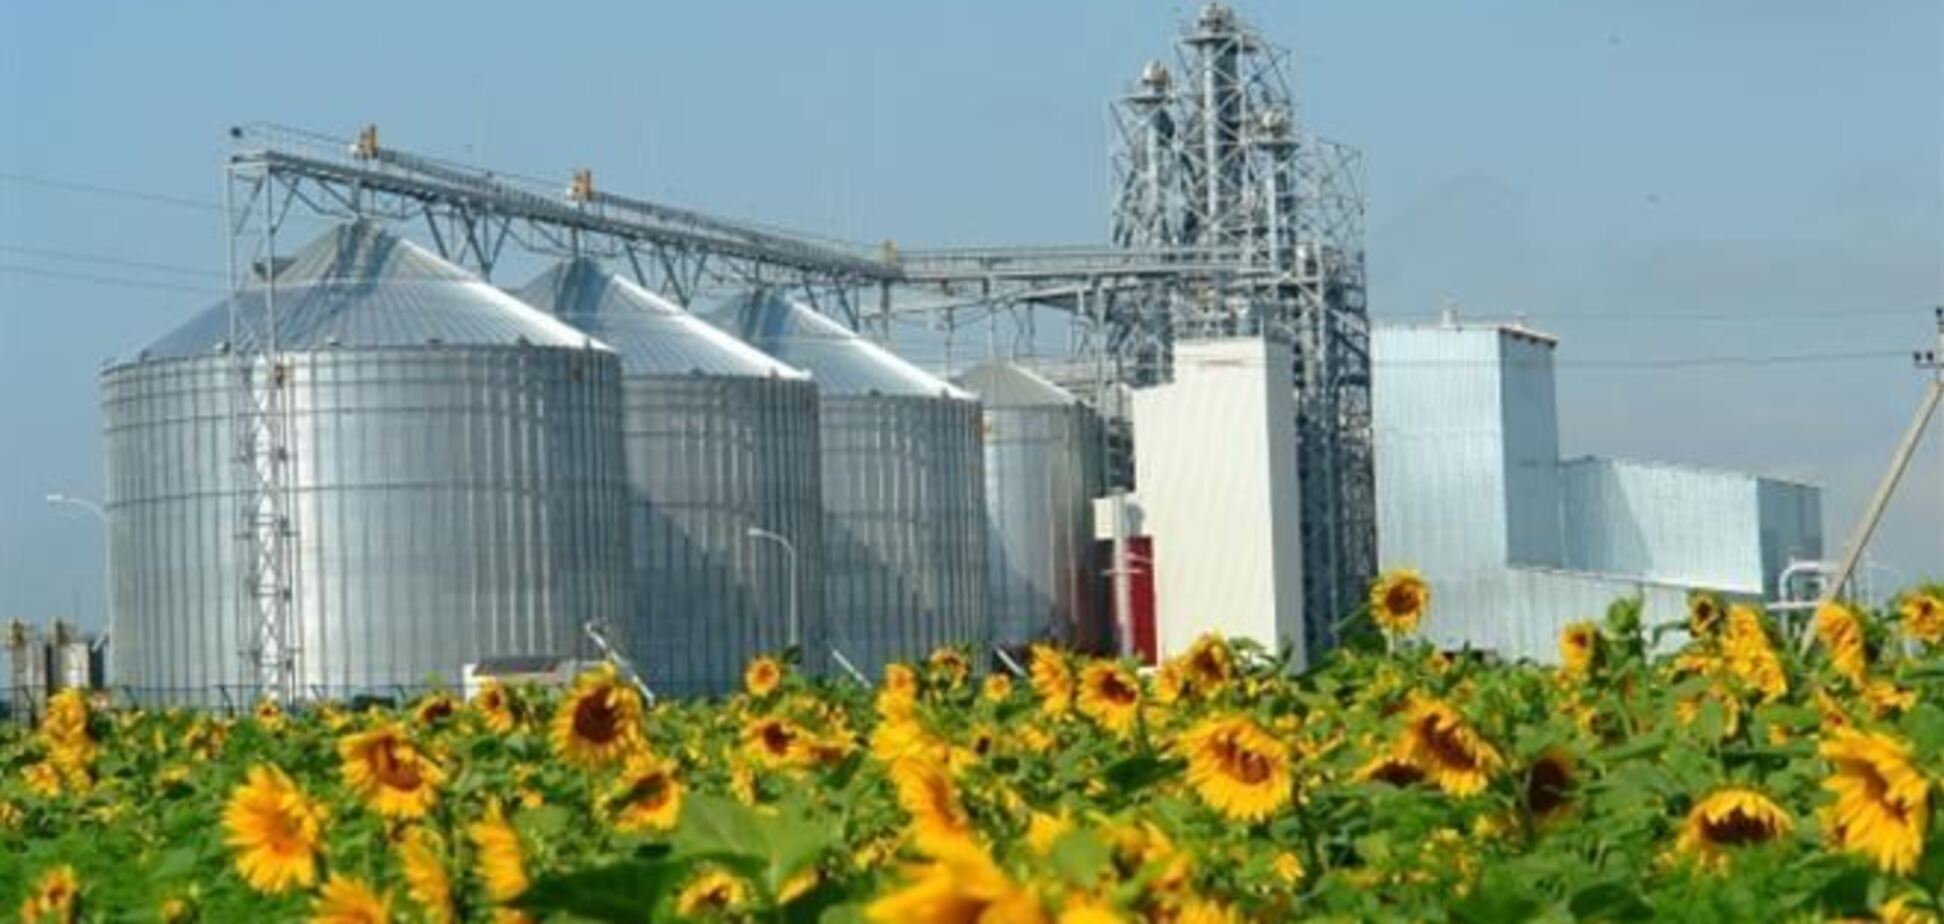 Ukrlandfarming получила $60 млн предоплаты от Cargill